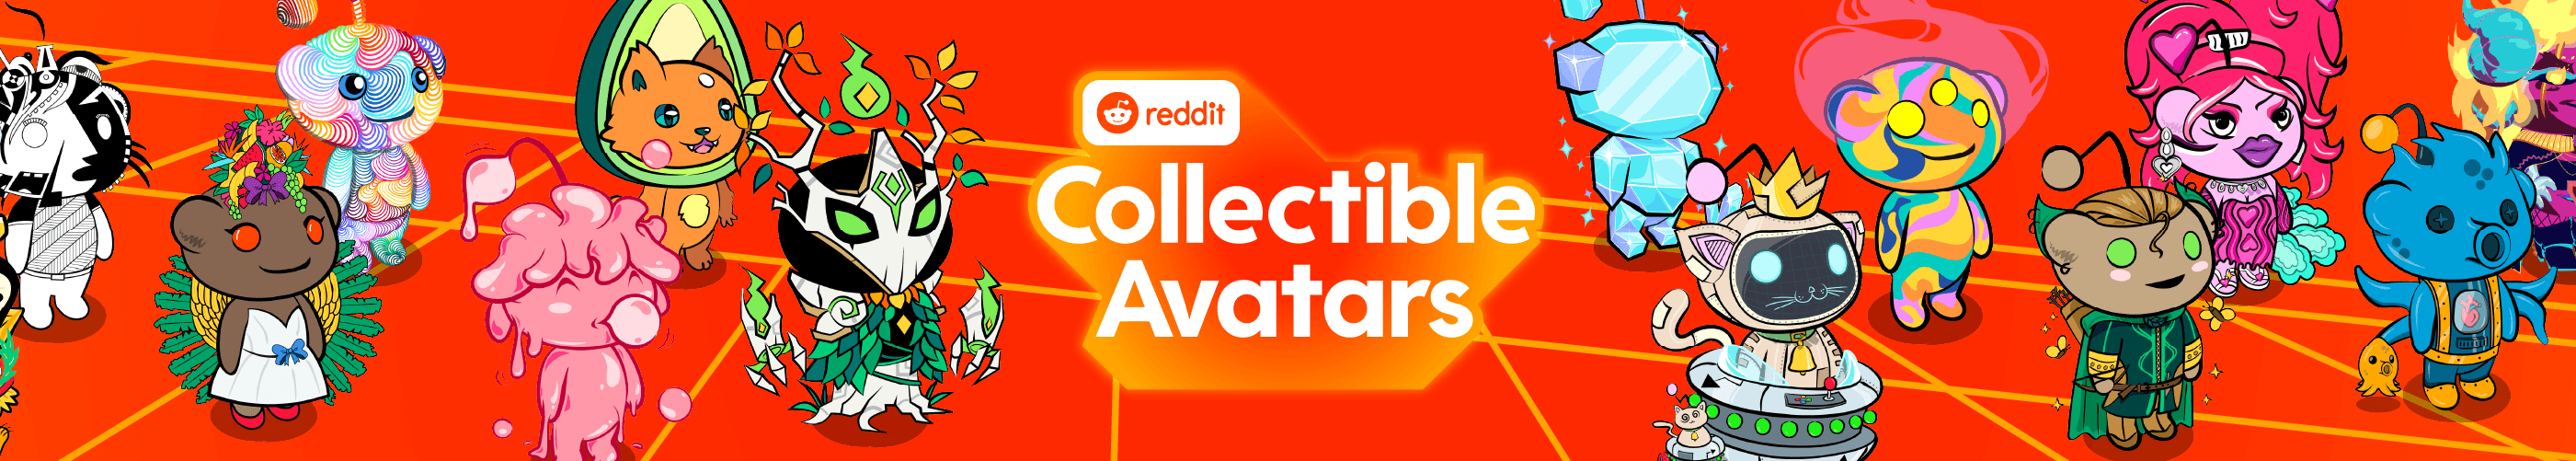 RedditCollectibleAvatars banner